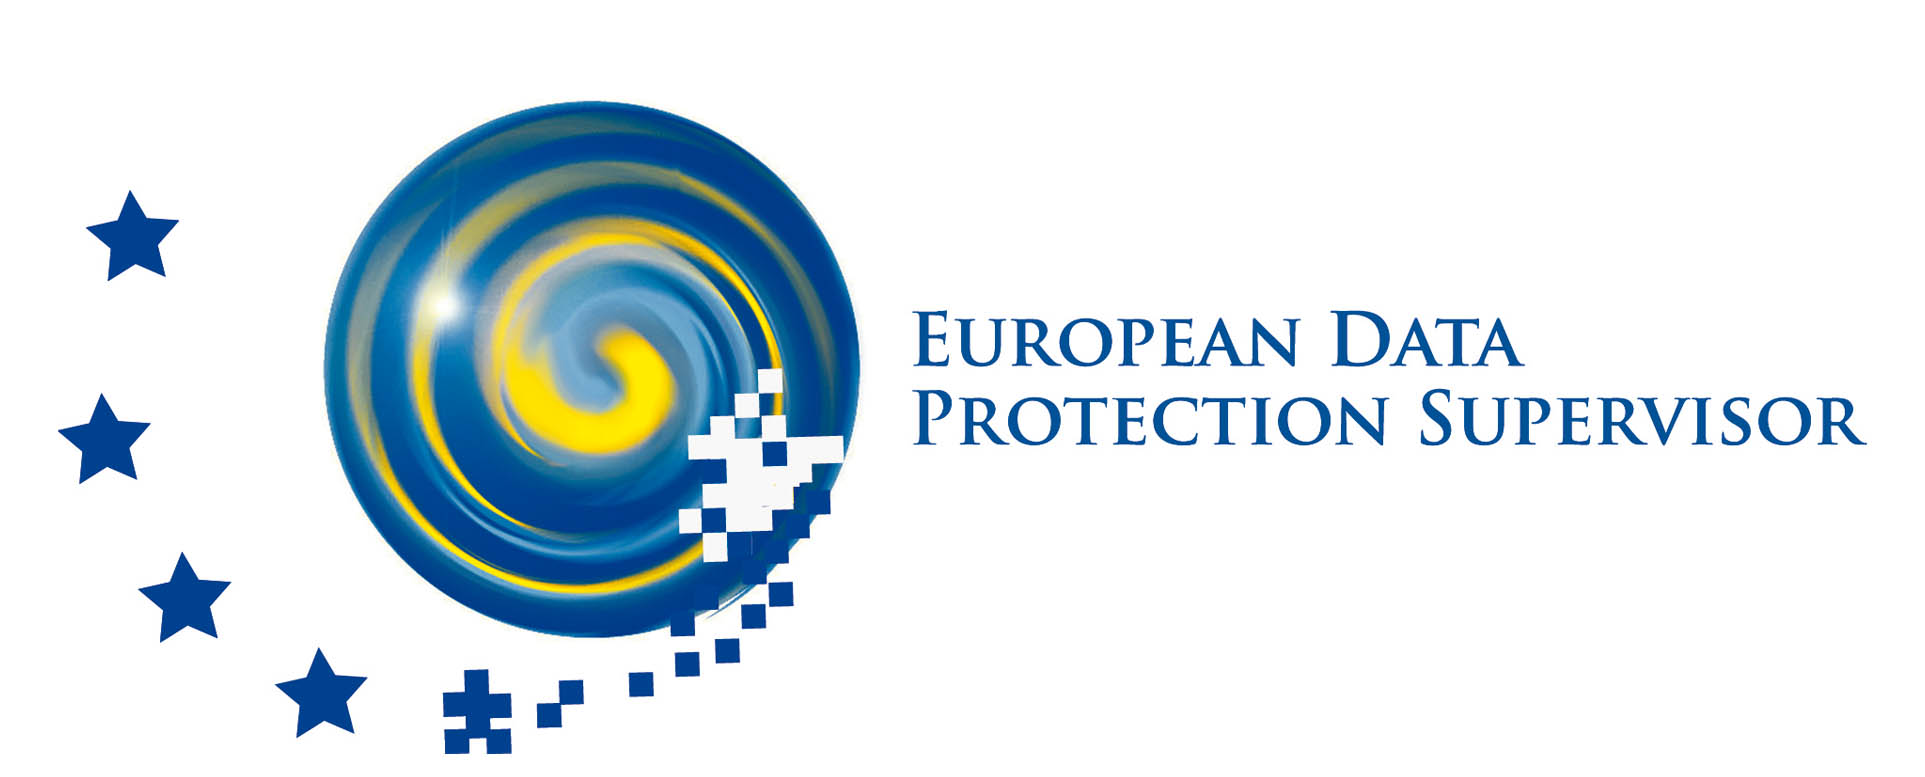 Επιπρόσθετη προστασία έναντι των αμερικανικών τεχνολογικών κολοσσών προτείνει η Ευρωπαϊκή Ένωση